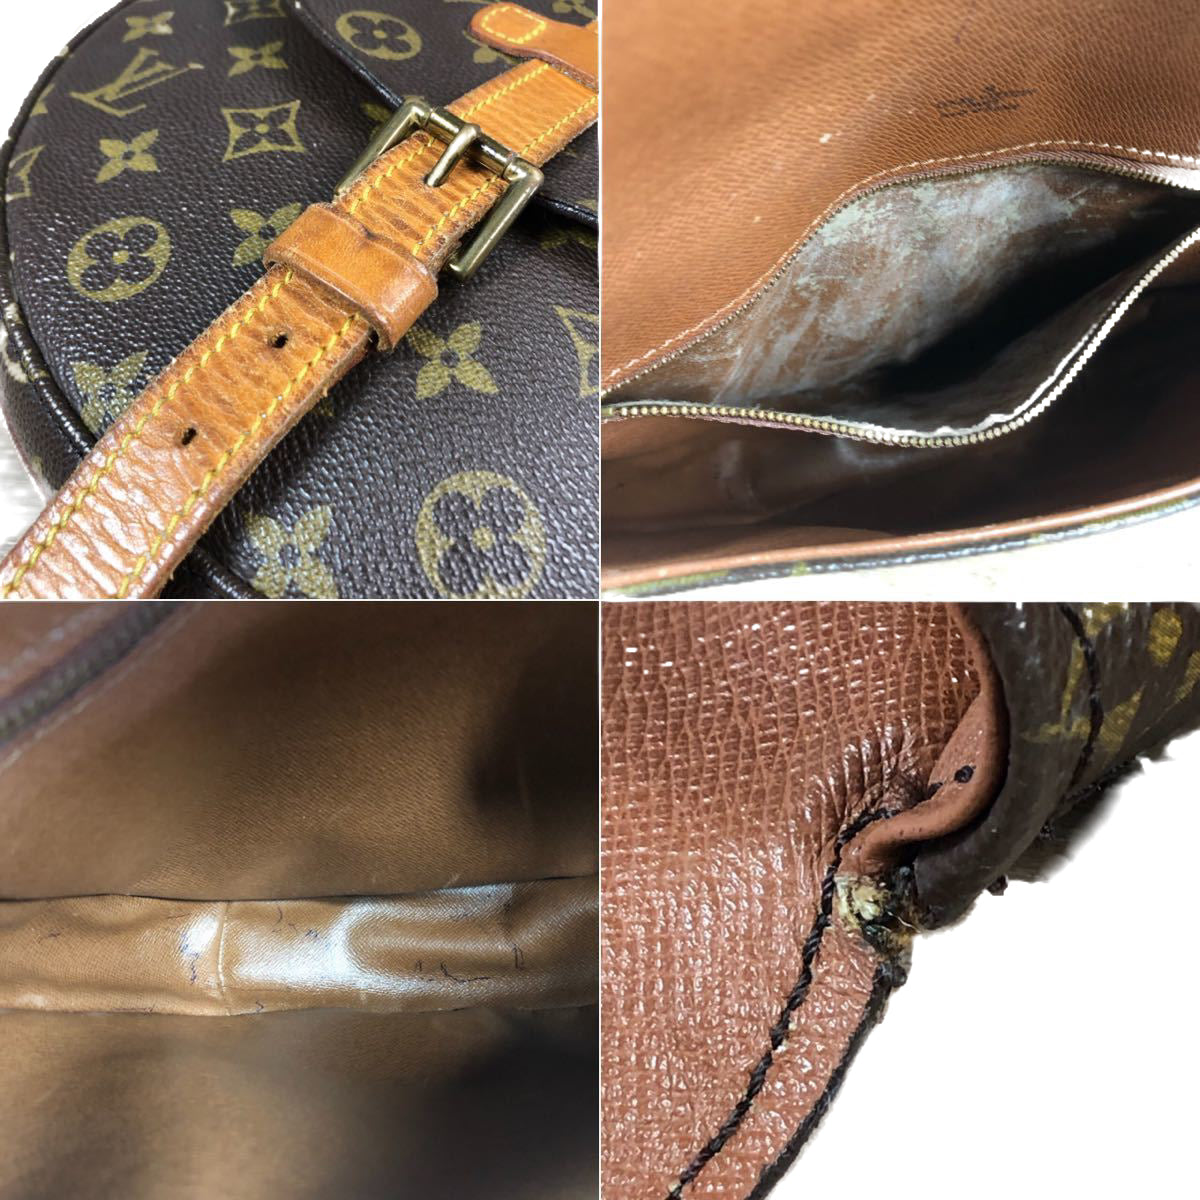 Authentic Louis Vuitton Shoulder Bag Chantilly GM M40647 Browns Monogram